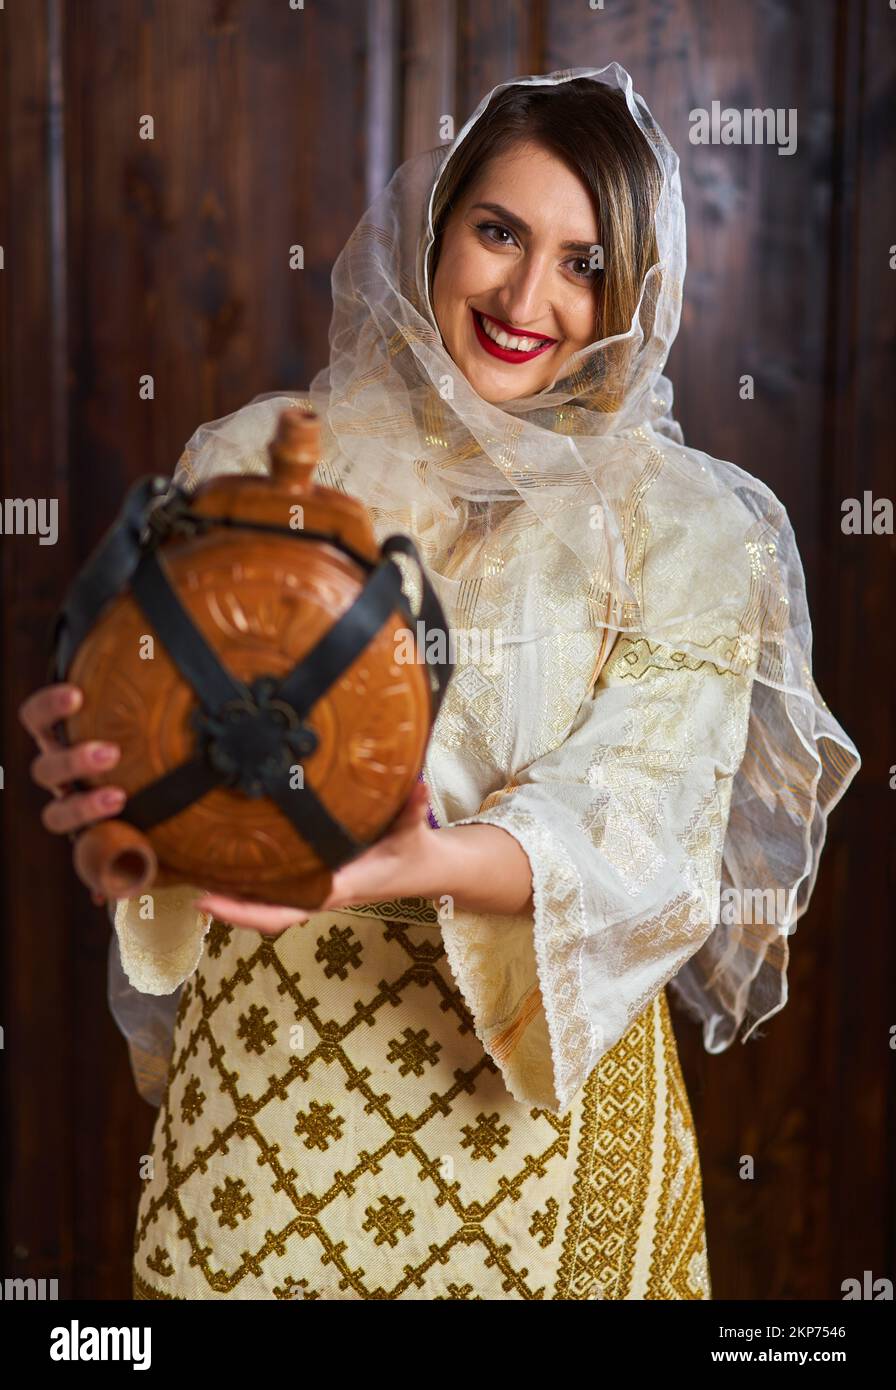 Giovane donna rumena in costume tradizionale sposa popolare in una casa d'epoca con una bottiglia di vino in legno Foto Stock